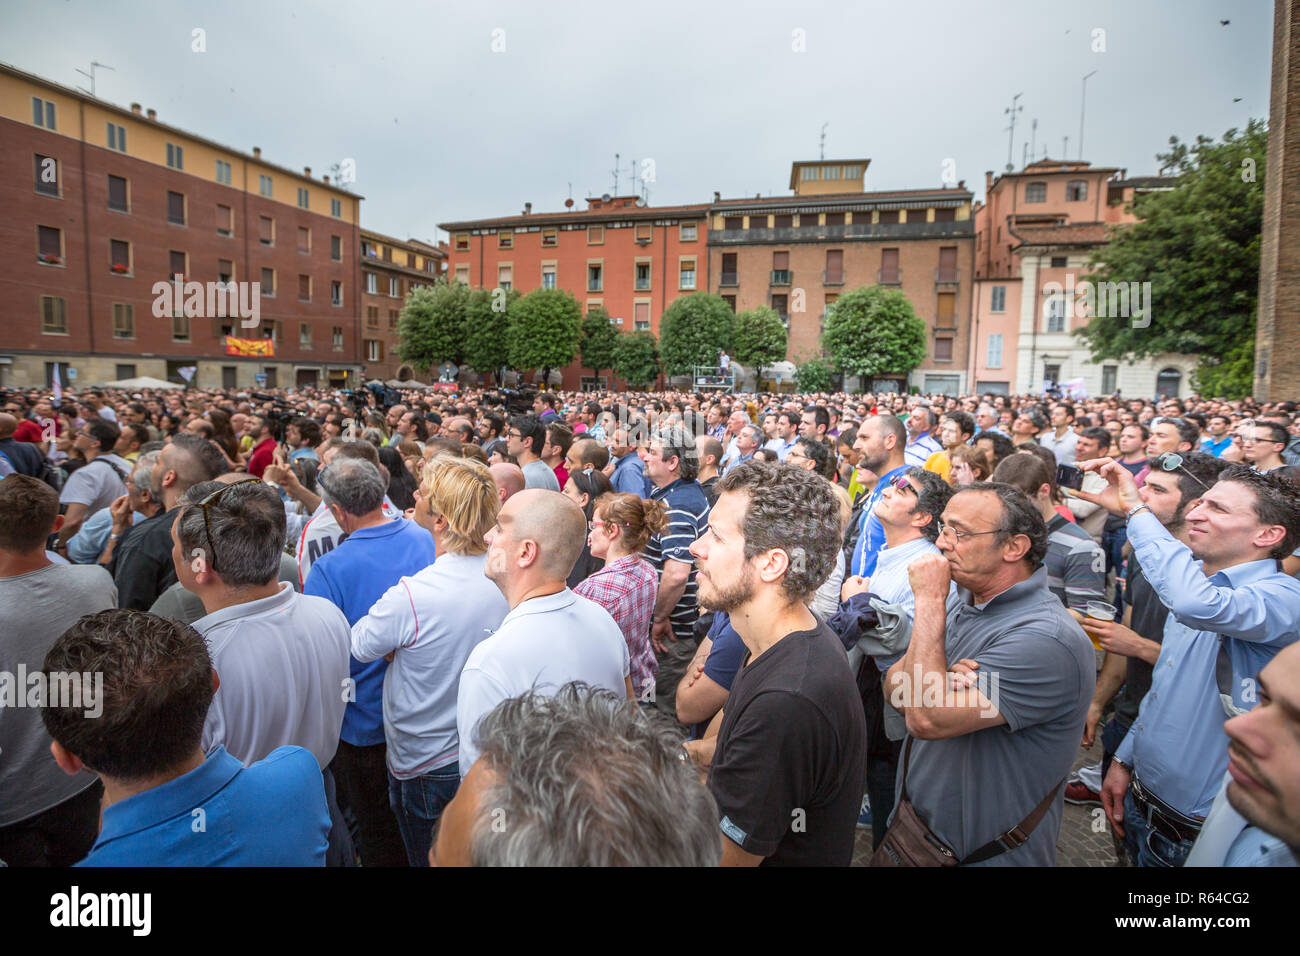 Bologna, Italien, 10. Mai 2014: große Menschenmenge hören berühmten Politiker Beppe Grillo in piazza San Francesco für Movimento 5 Stelle M5S Party. Vielzahl von Menschen zusammen für ein politisches Ereignis Stockfoto